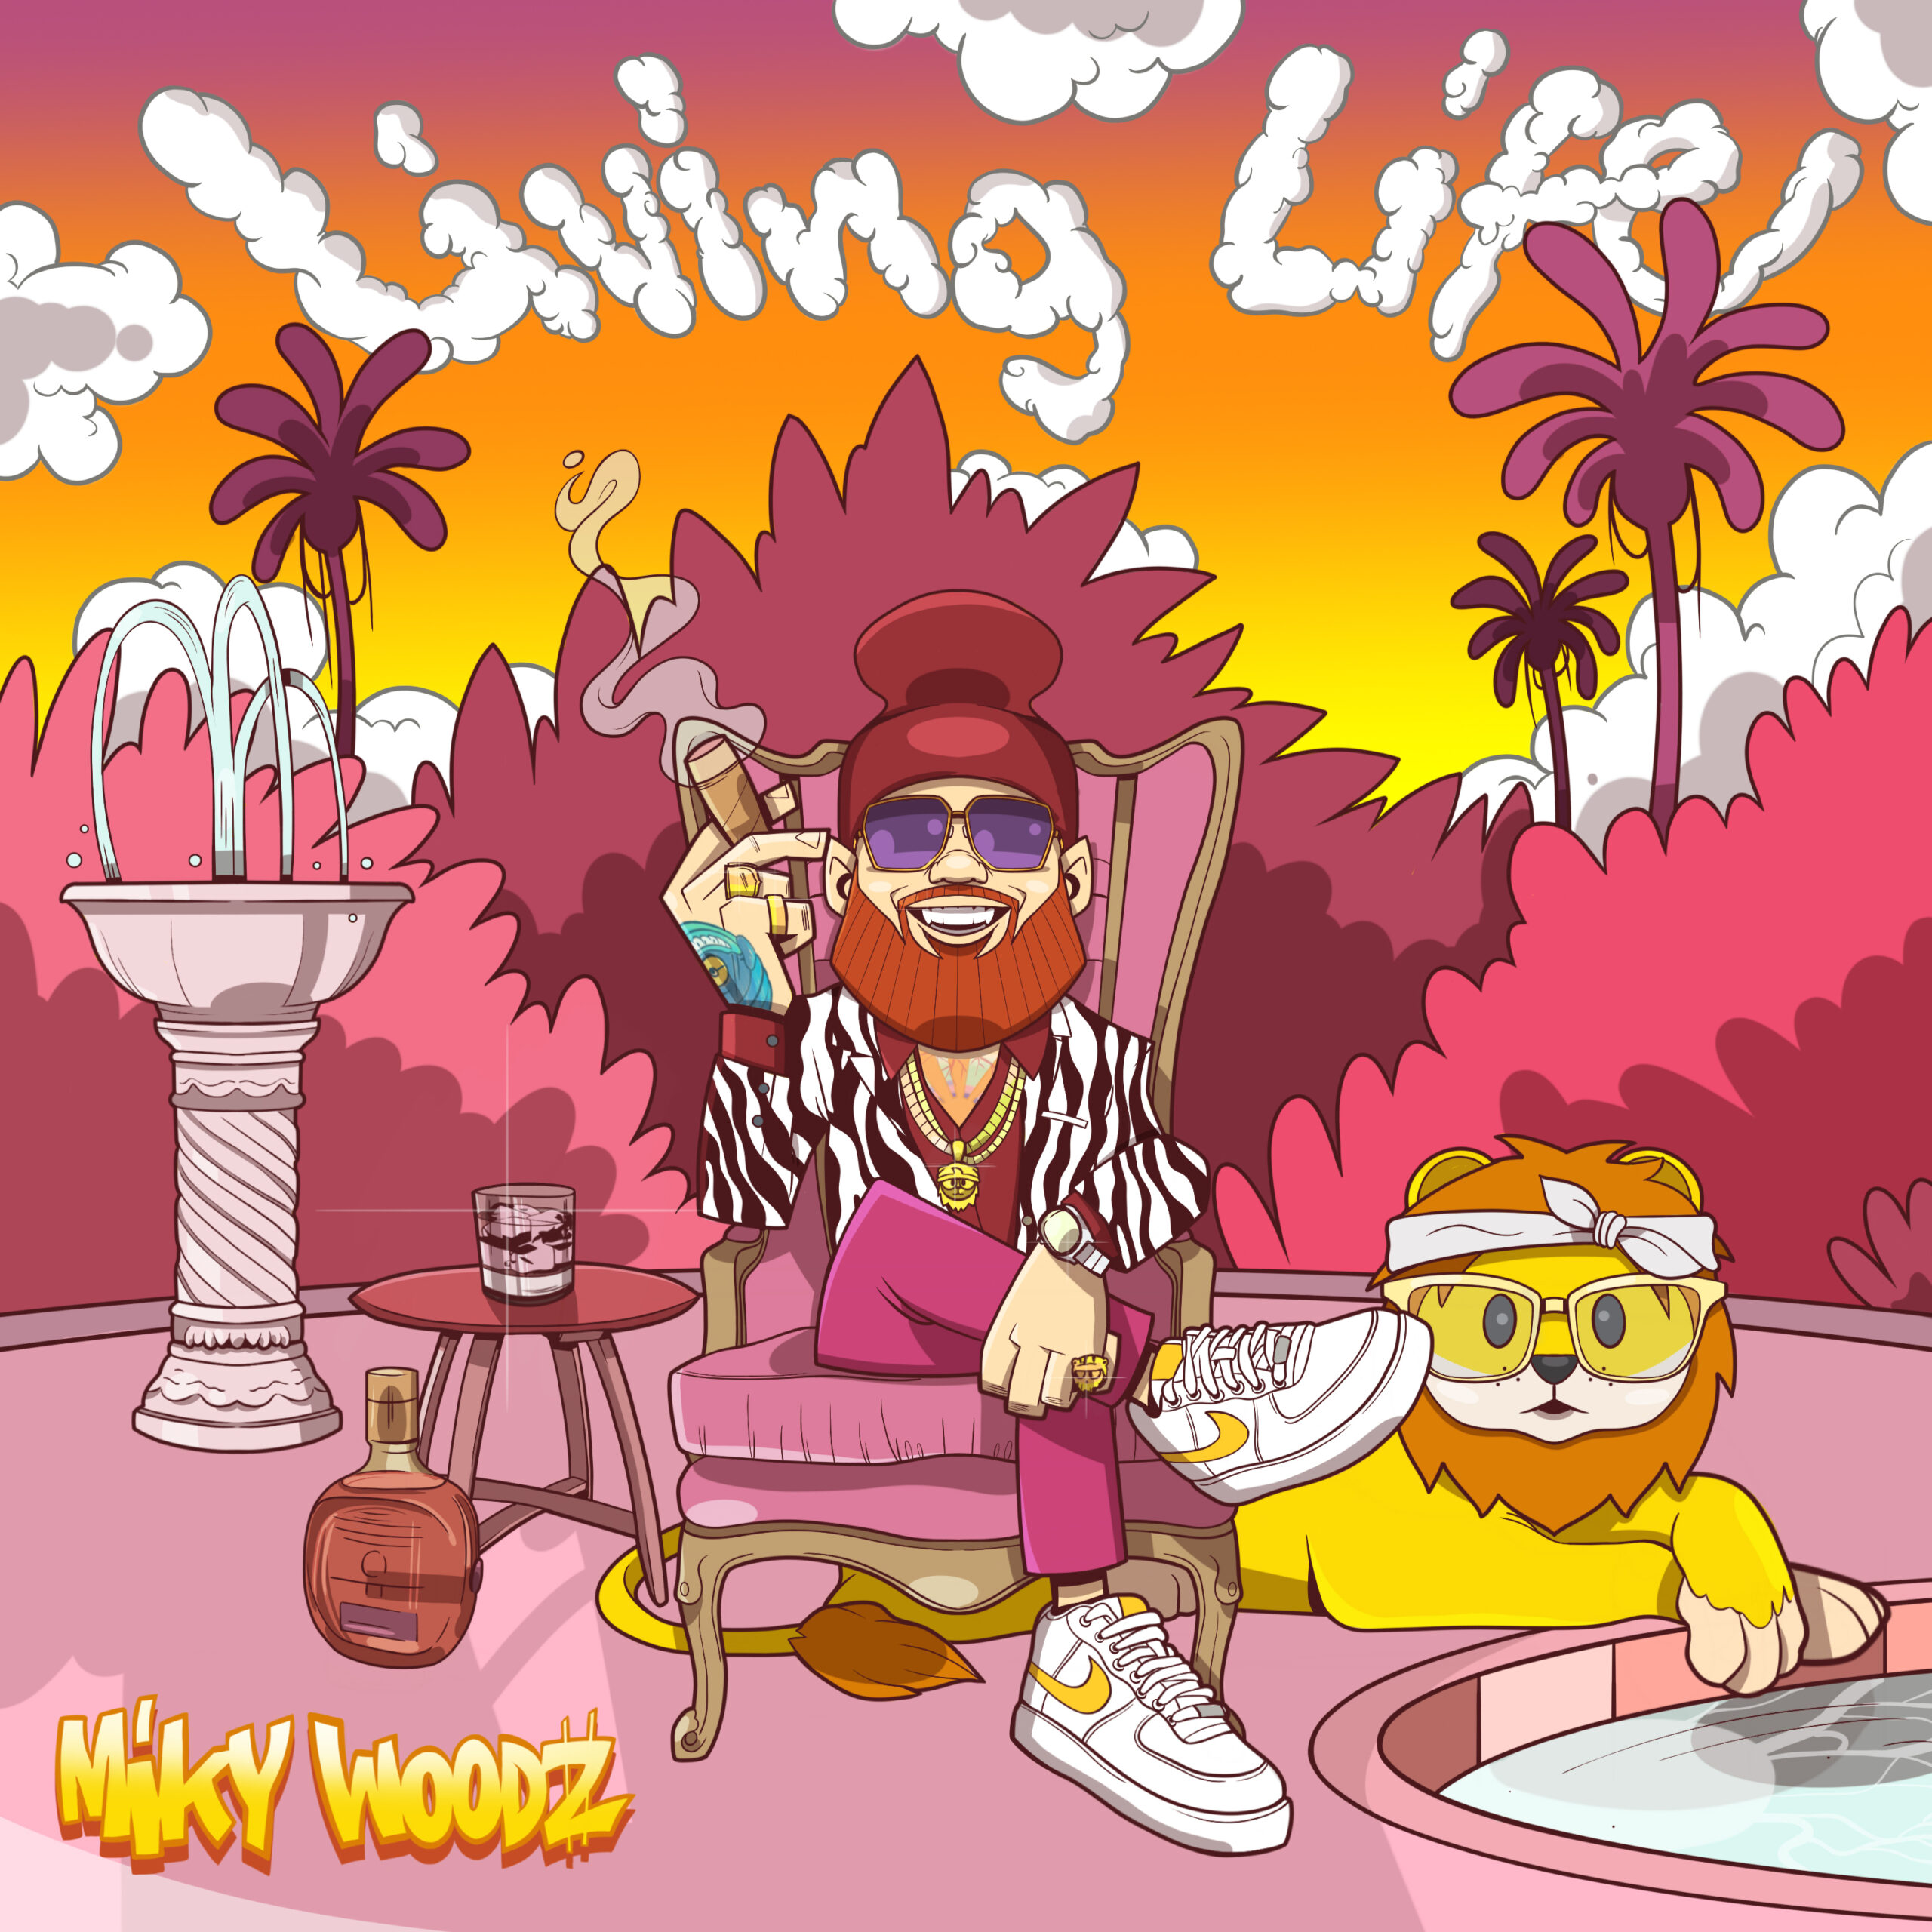 MIKY WOODZ destaca su versatilidad artística con su nuevo EP “LIVING LIFE”